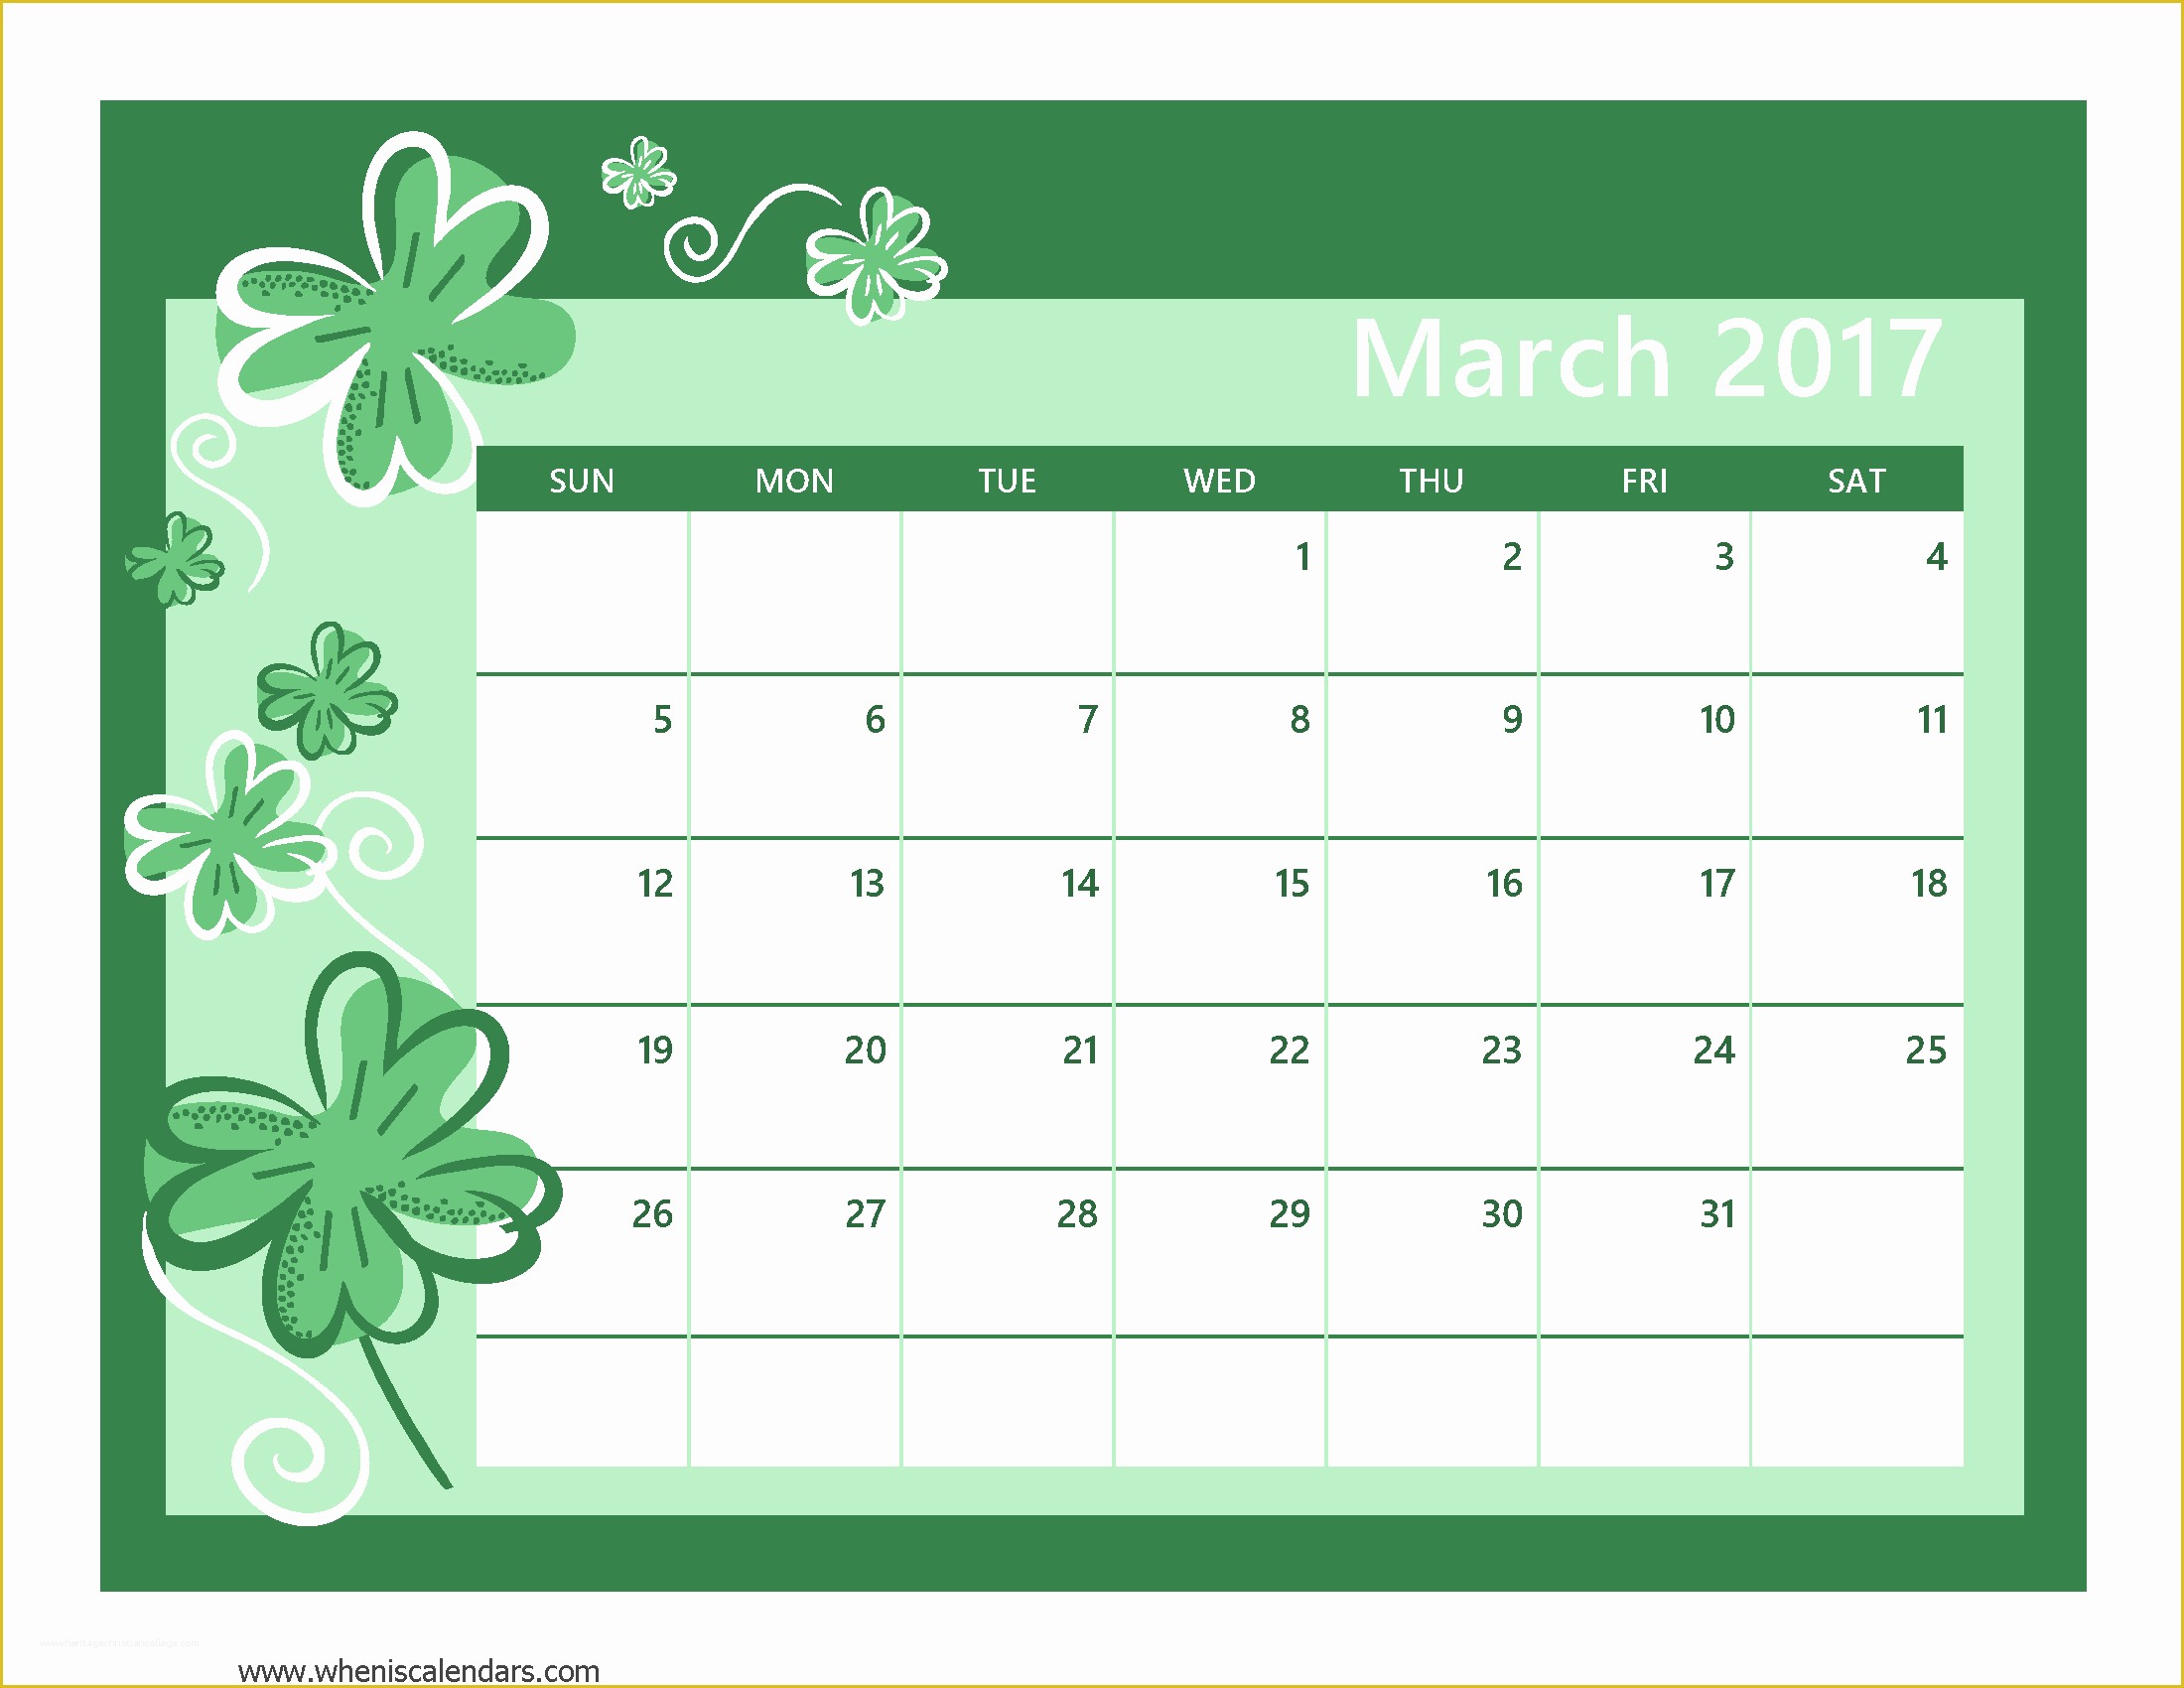 Free Photo Calendar Template 2017 Of March 2017 Calendar Cute